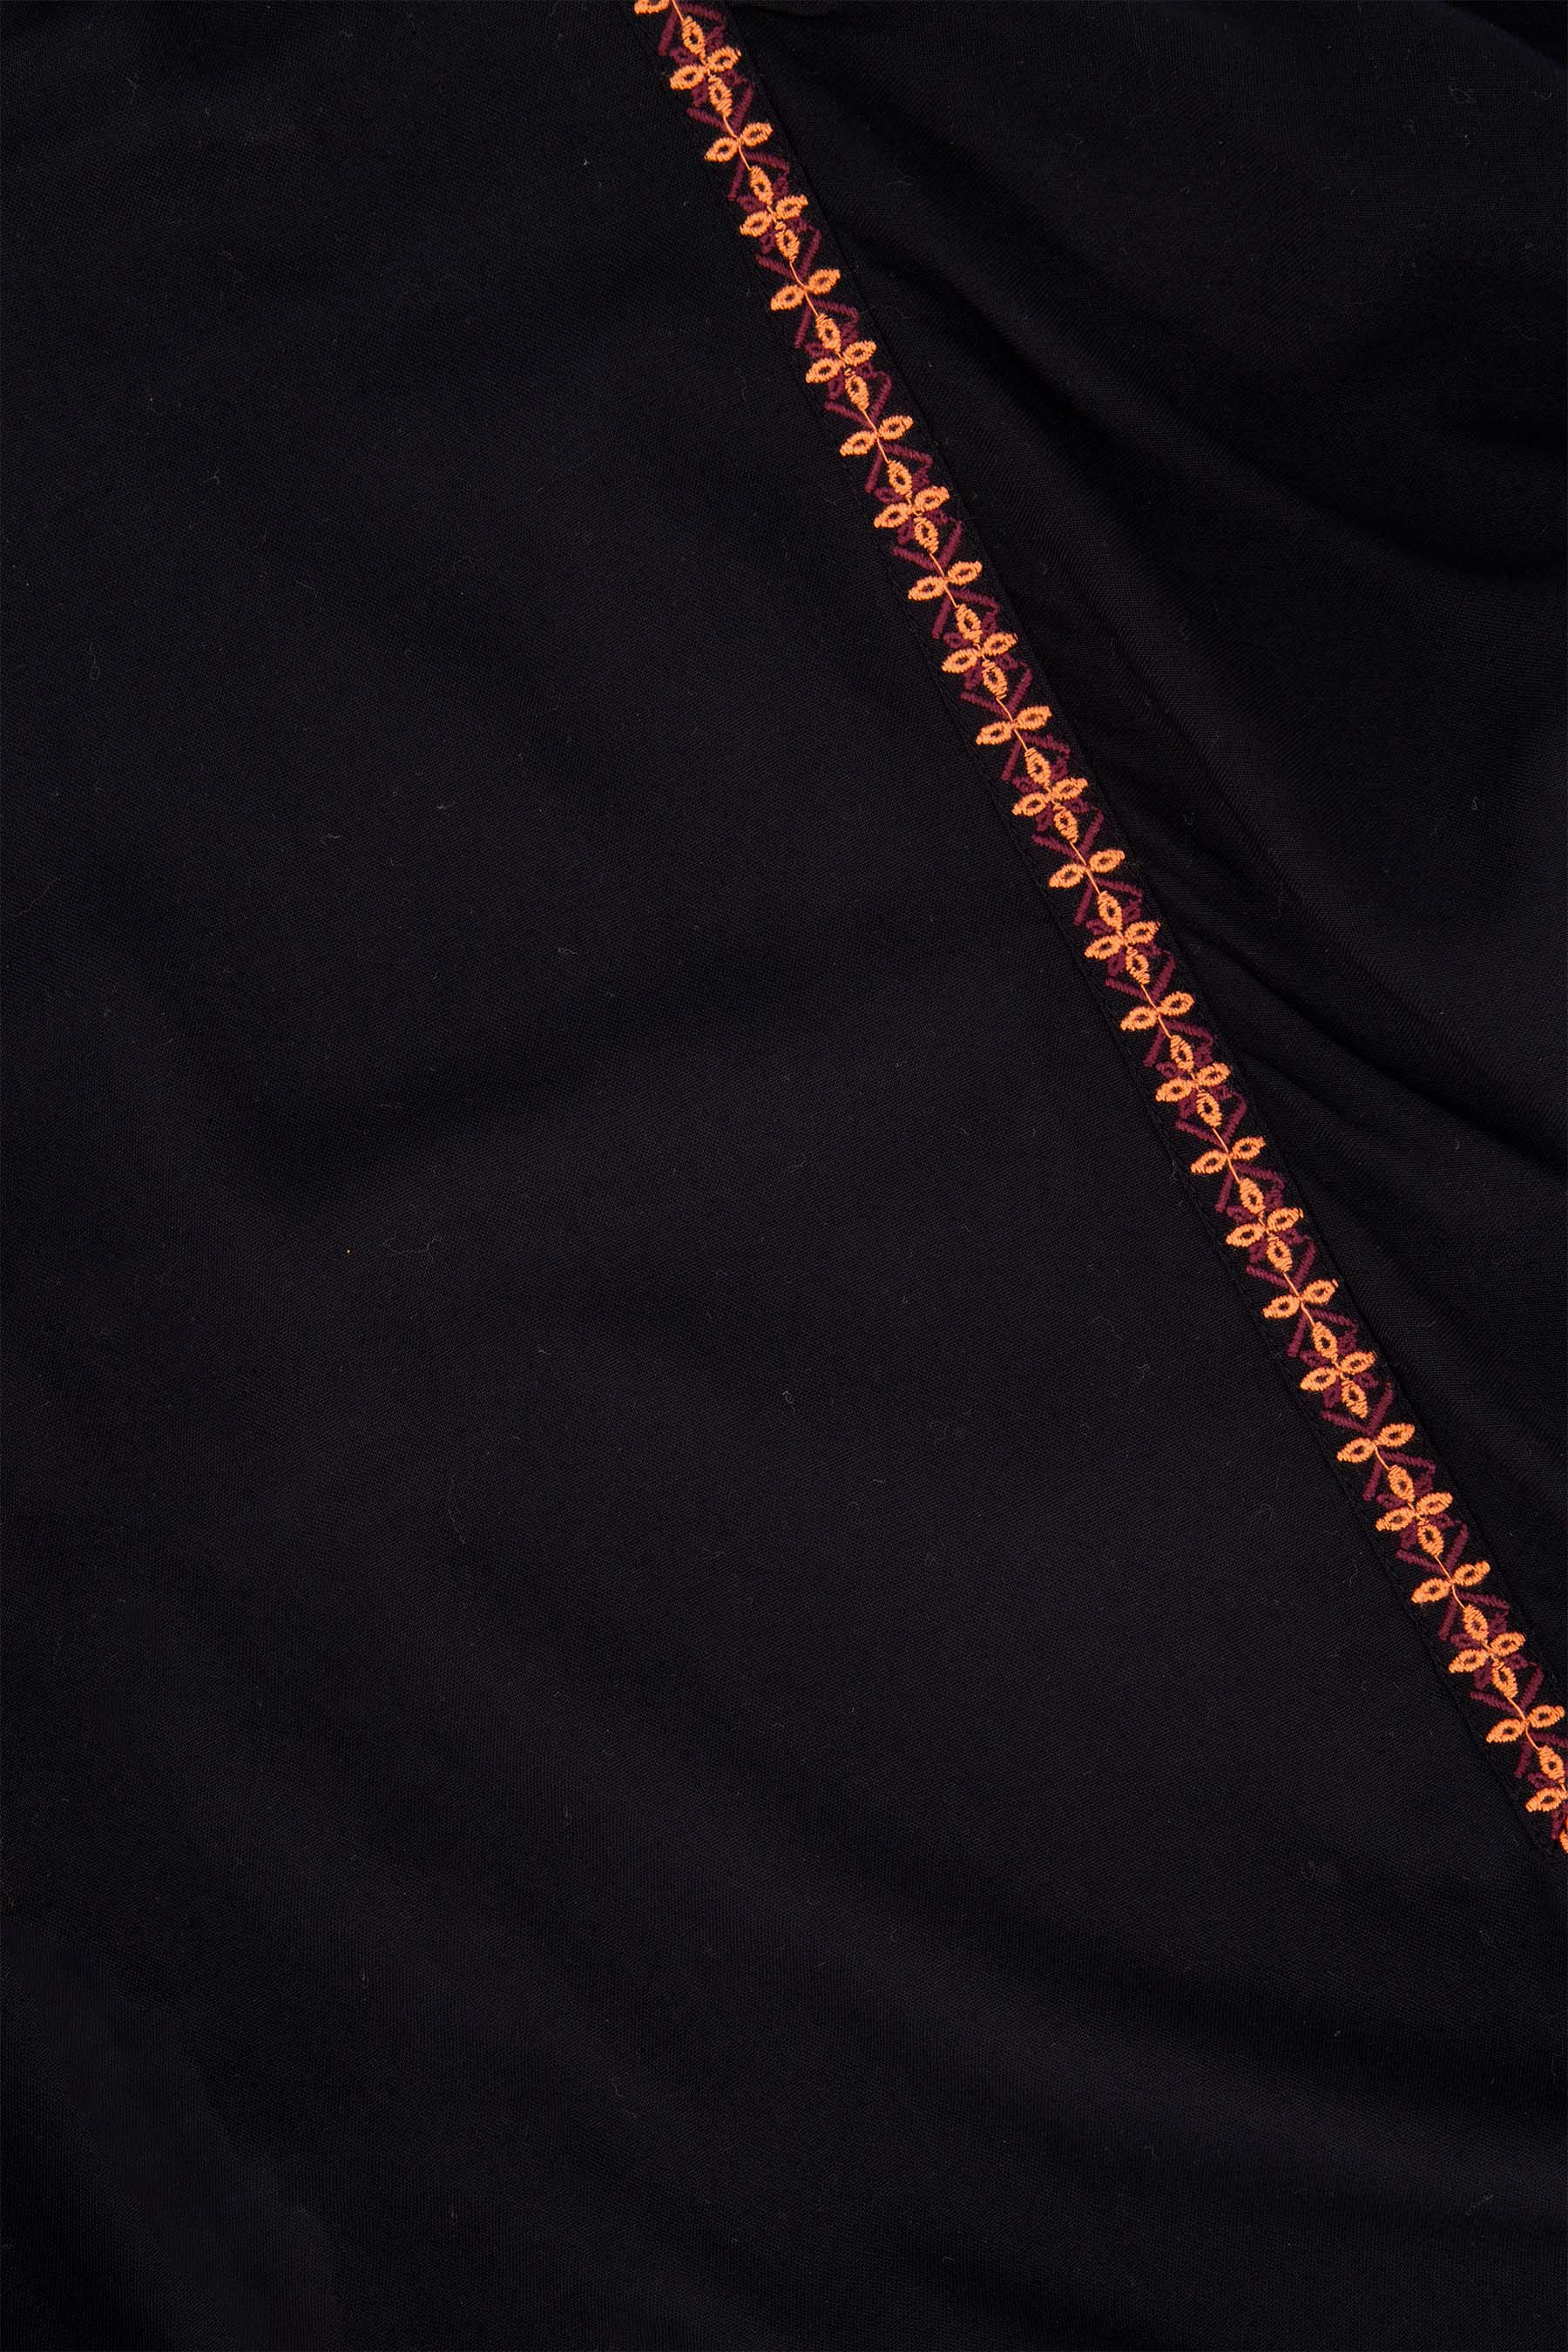 Blouse met borduursels - Zusss blouse met borduursels zwart koraalroze 0304 043 7047 detail1 - 192